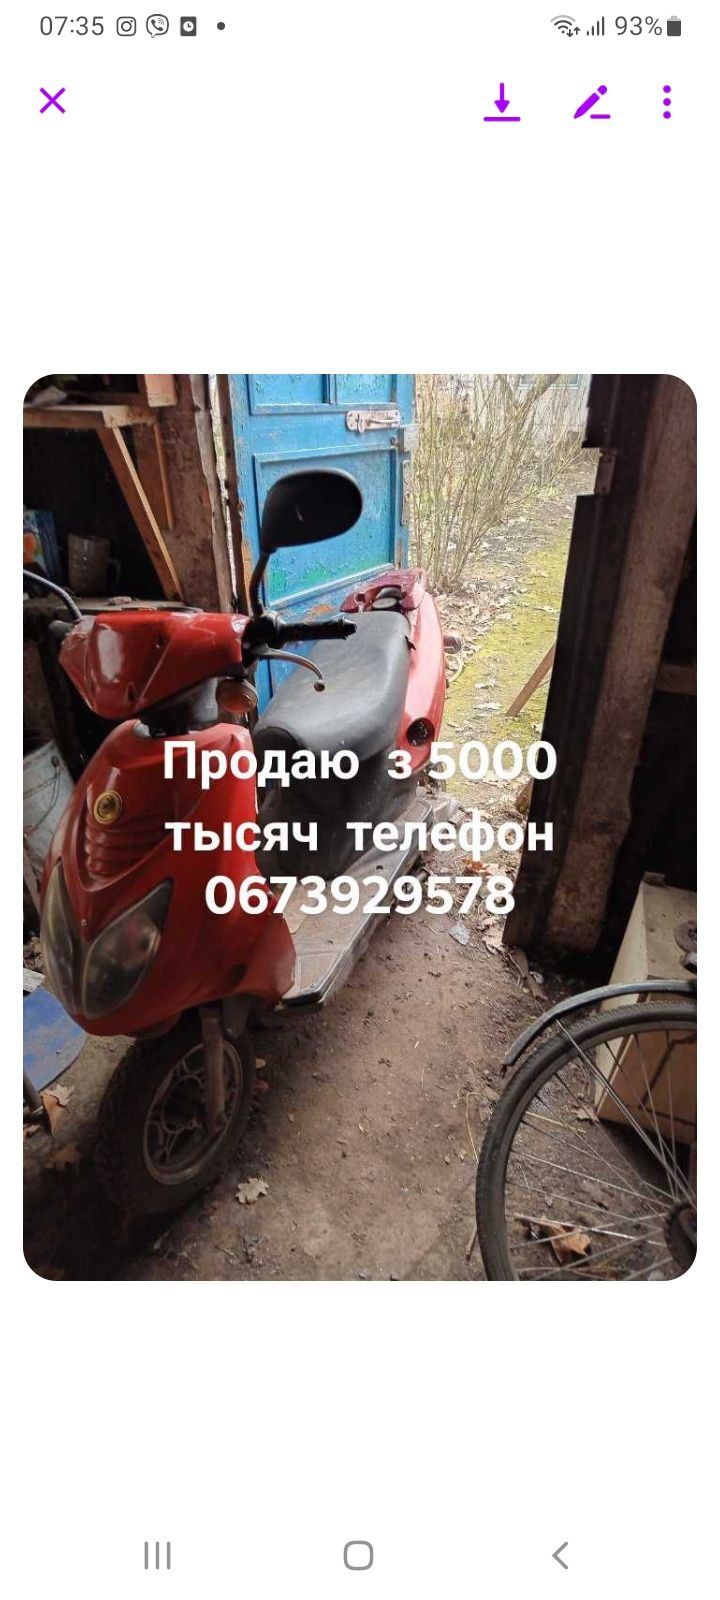 Скутер за 5000 грн